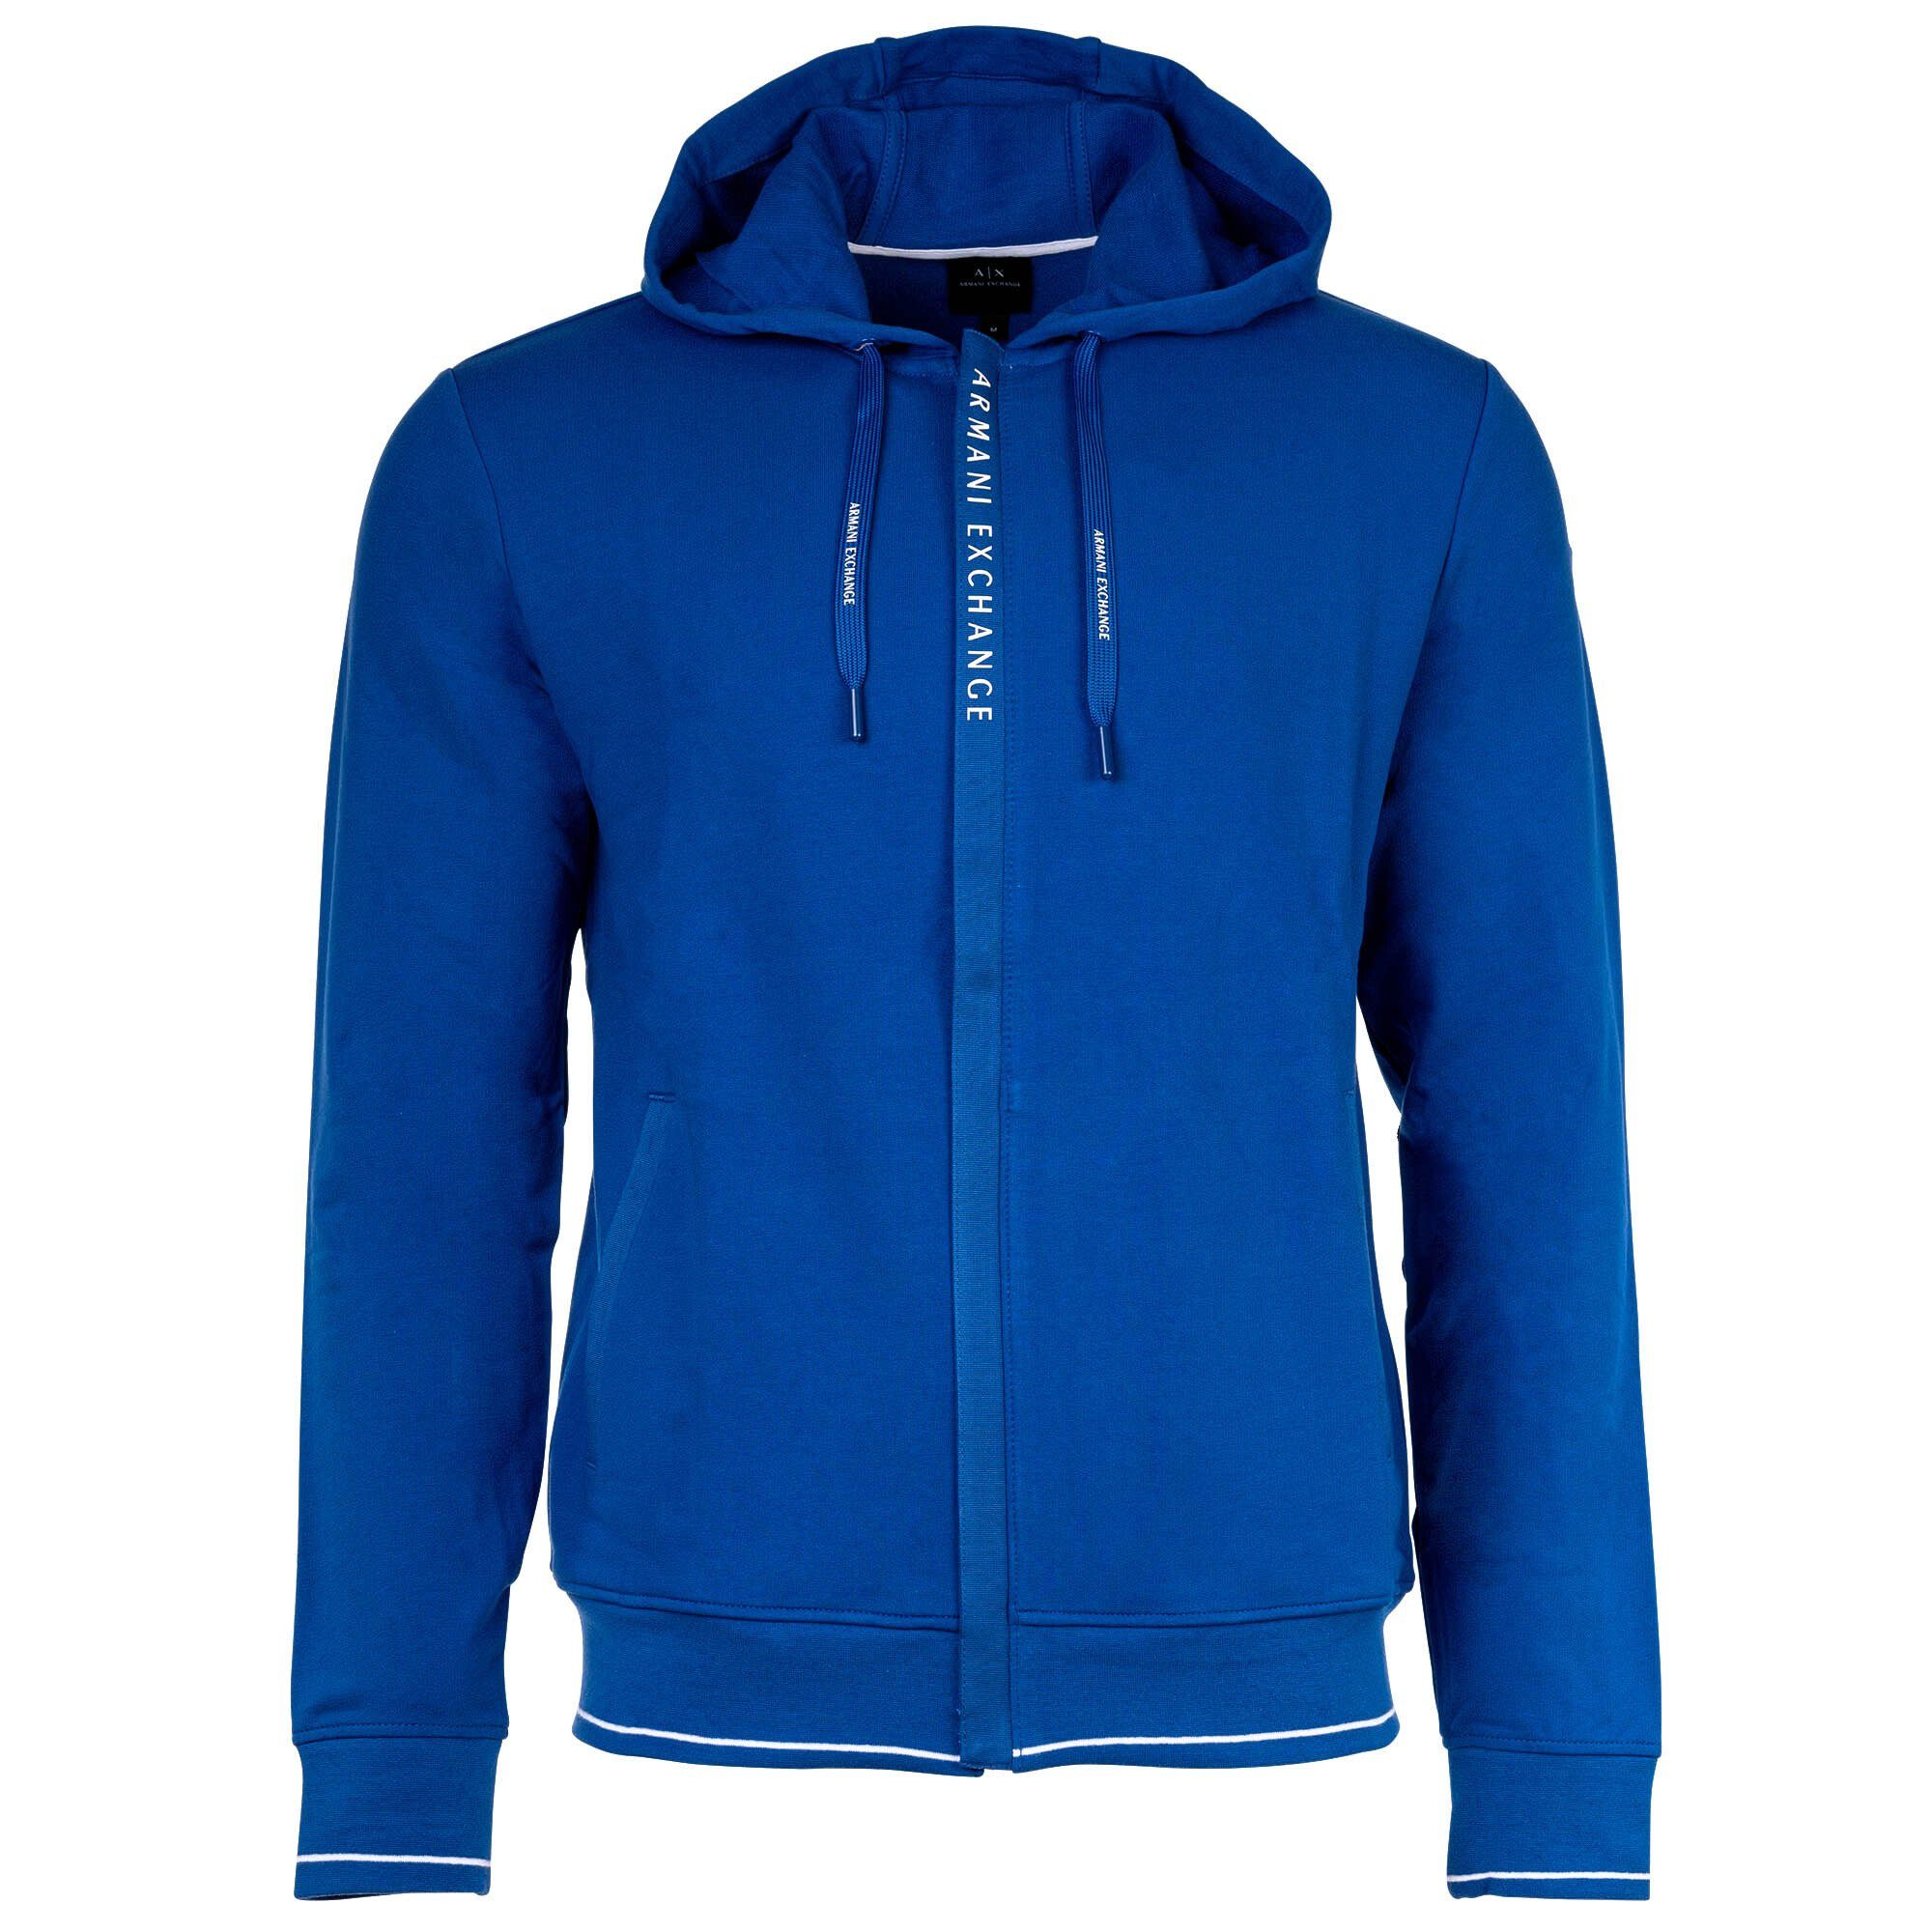 ARMANI EXCHANGE Logo Sweatshirtjacke, - Sweatshirt Jacke Baumwolle, Herren Blau